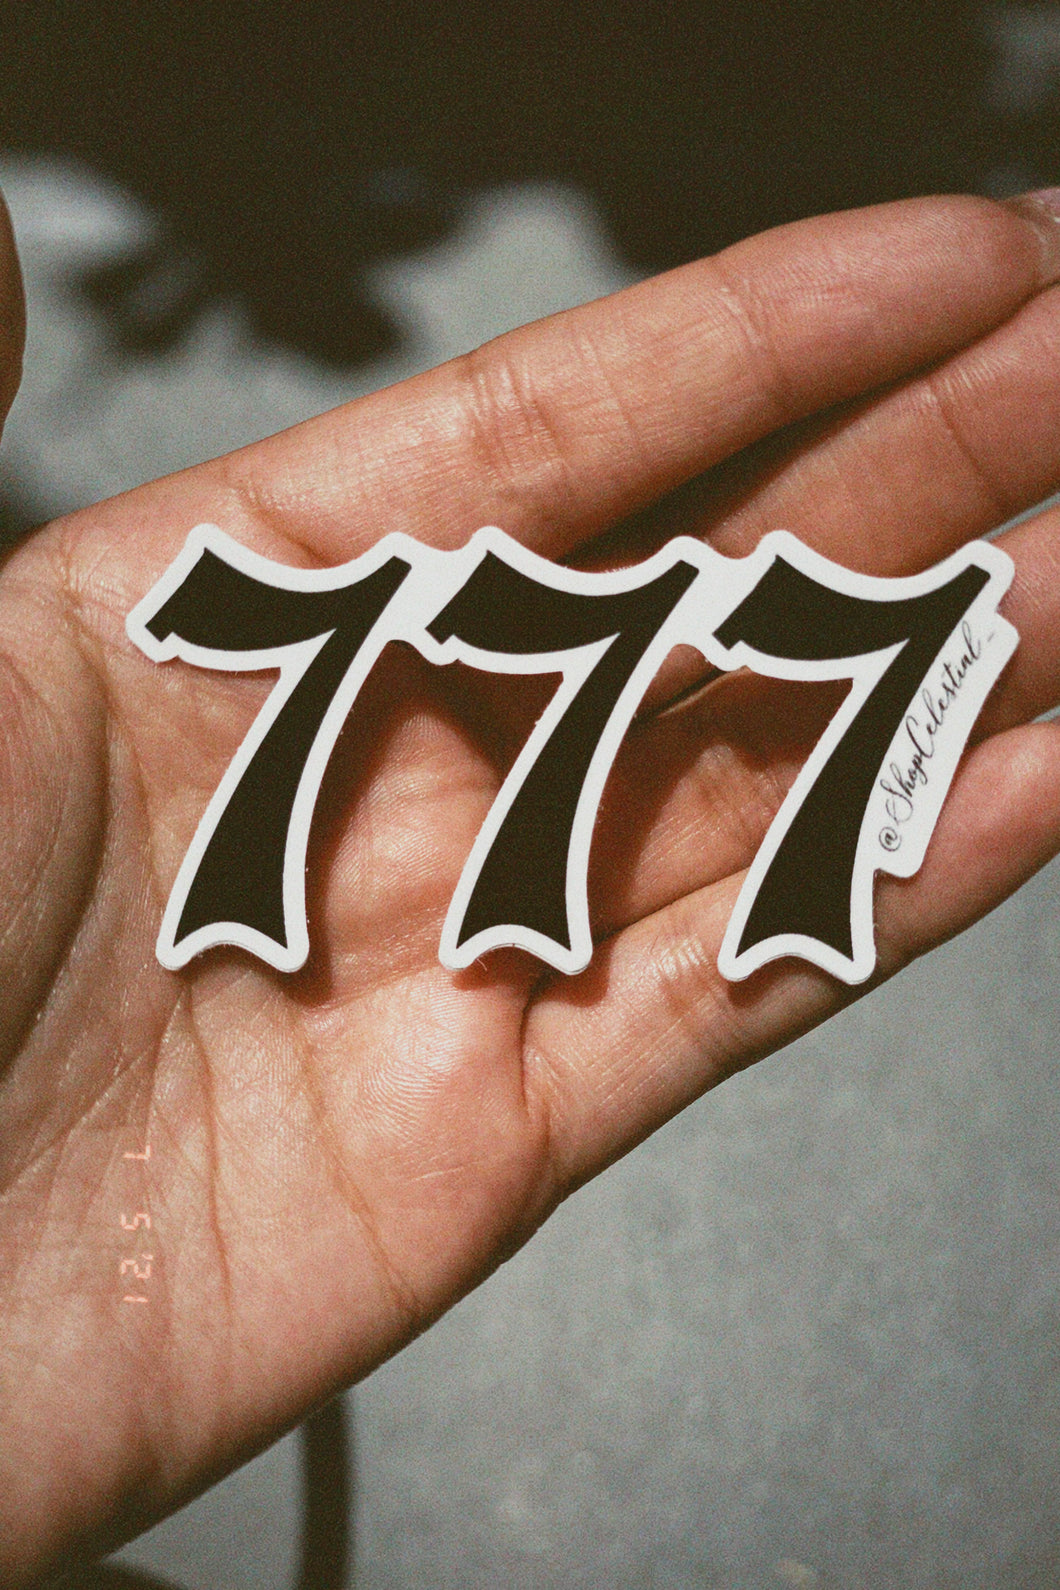 777 Angel Number Sticker